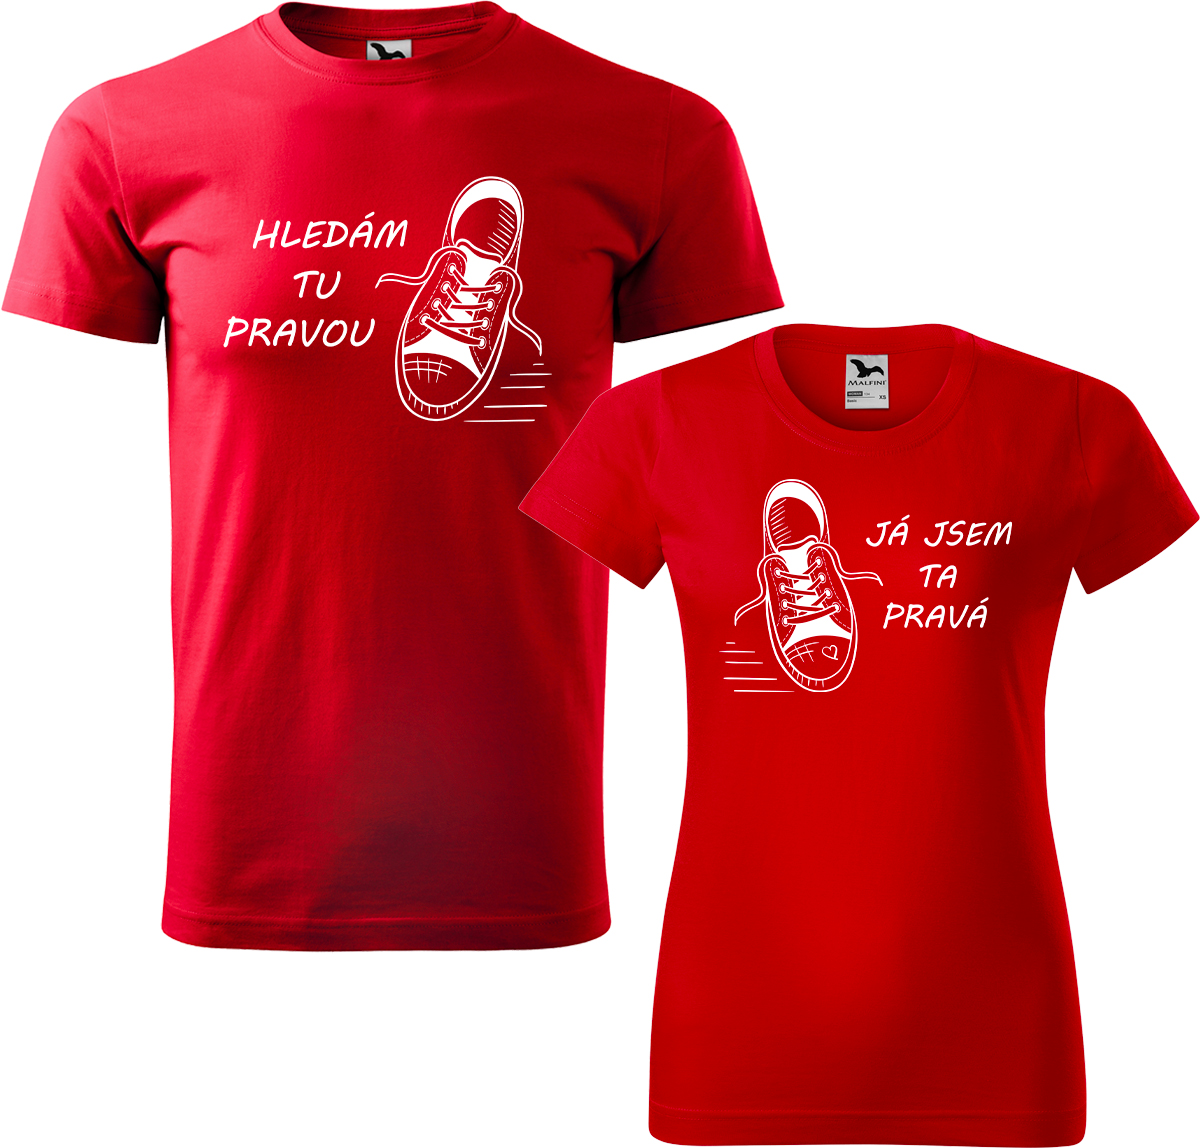 Trička pro páry - Kecky Barva: Červená (07), Velikost dámské tričko: M, Velikost pánské tričko: M